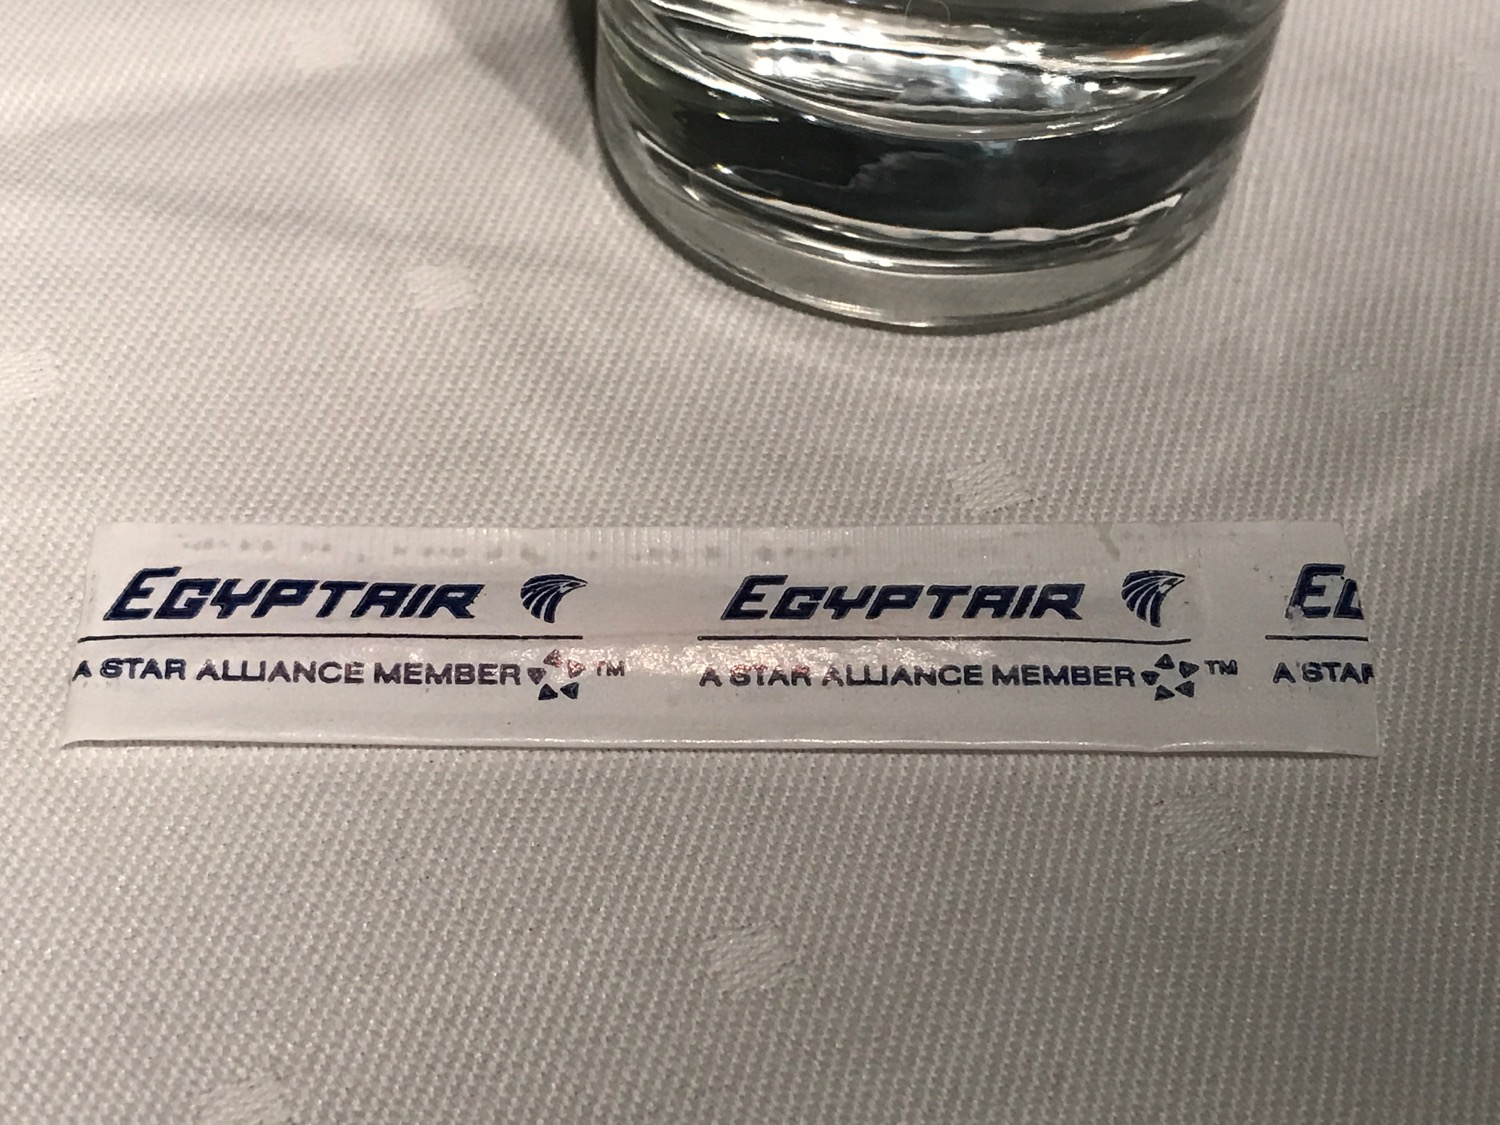 EgpytAir Cairo to Beirut 737-800 Business Class - 16